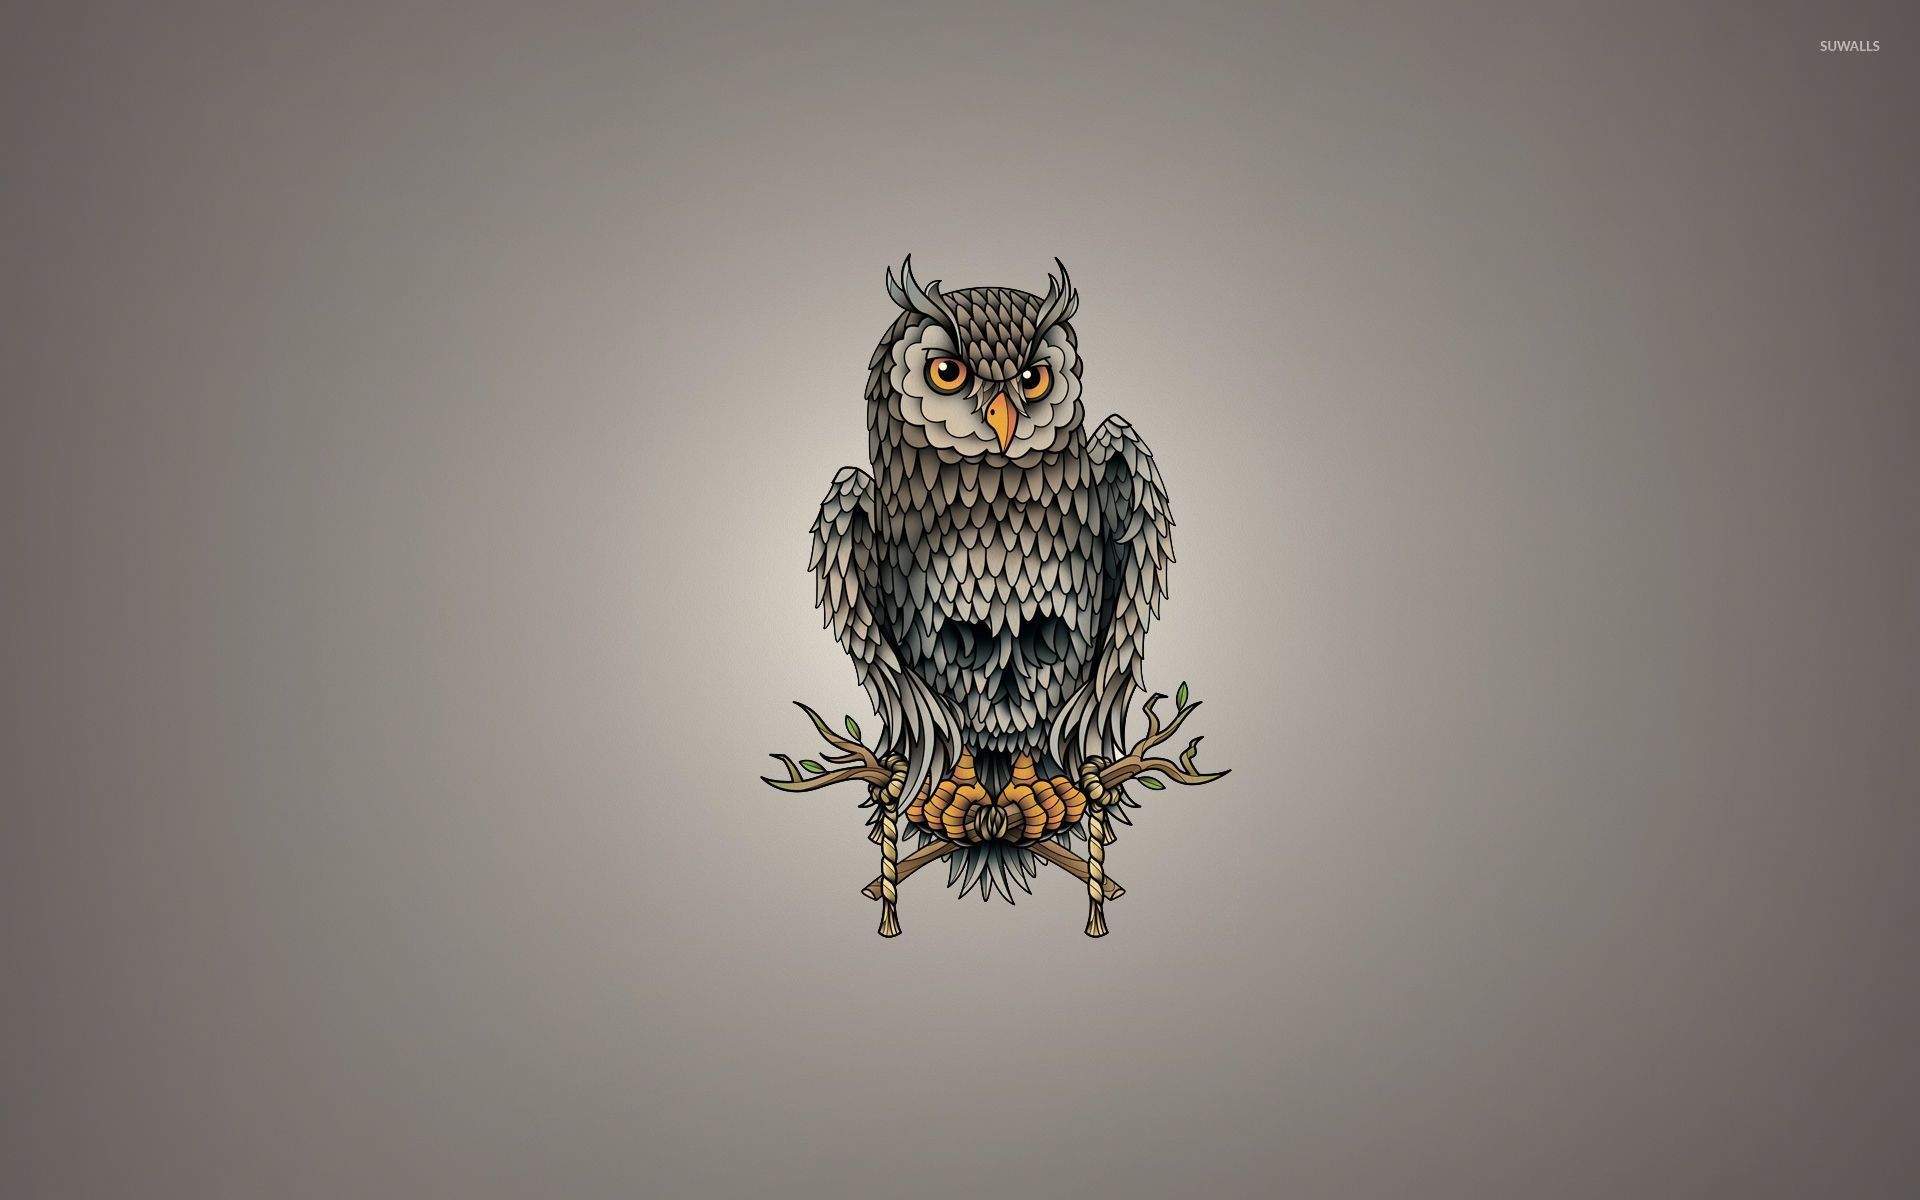 Skull owl wallpaper - Fondos de pantalla vectoriales - # 52860